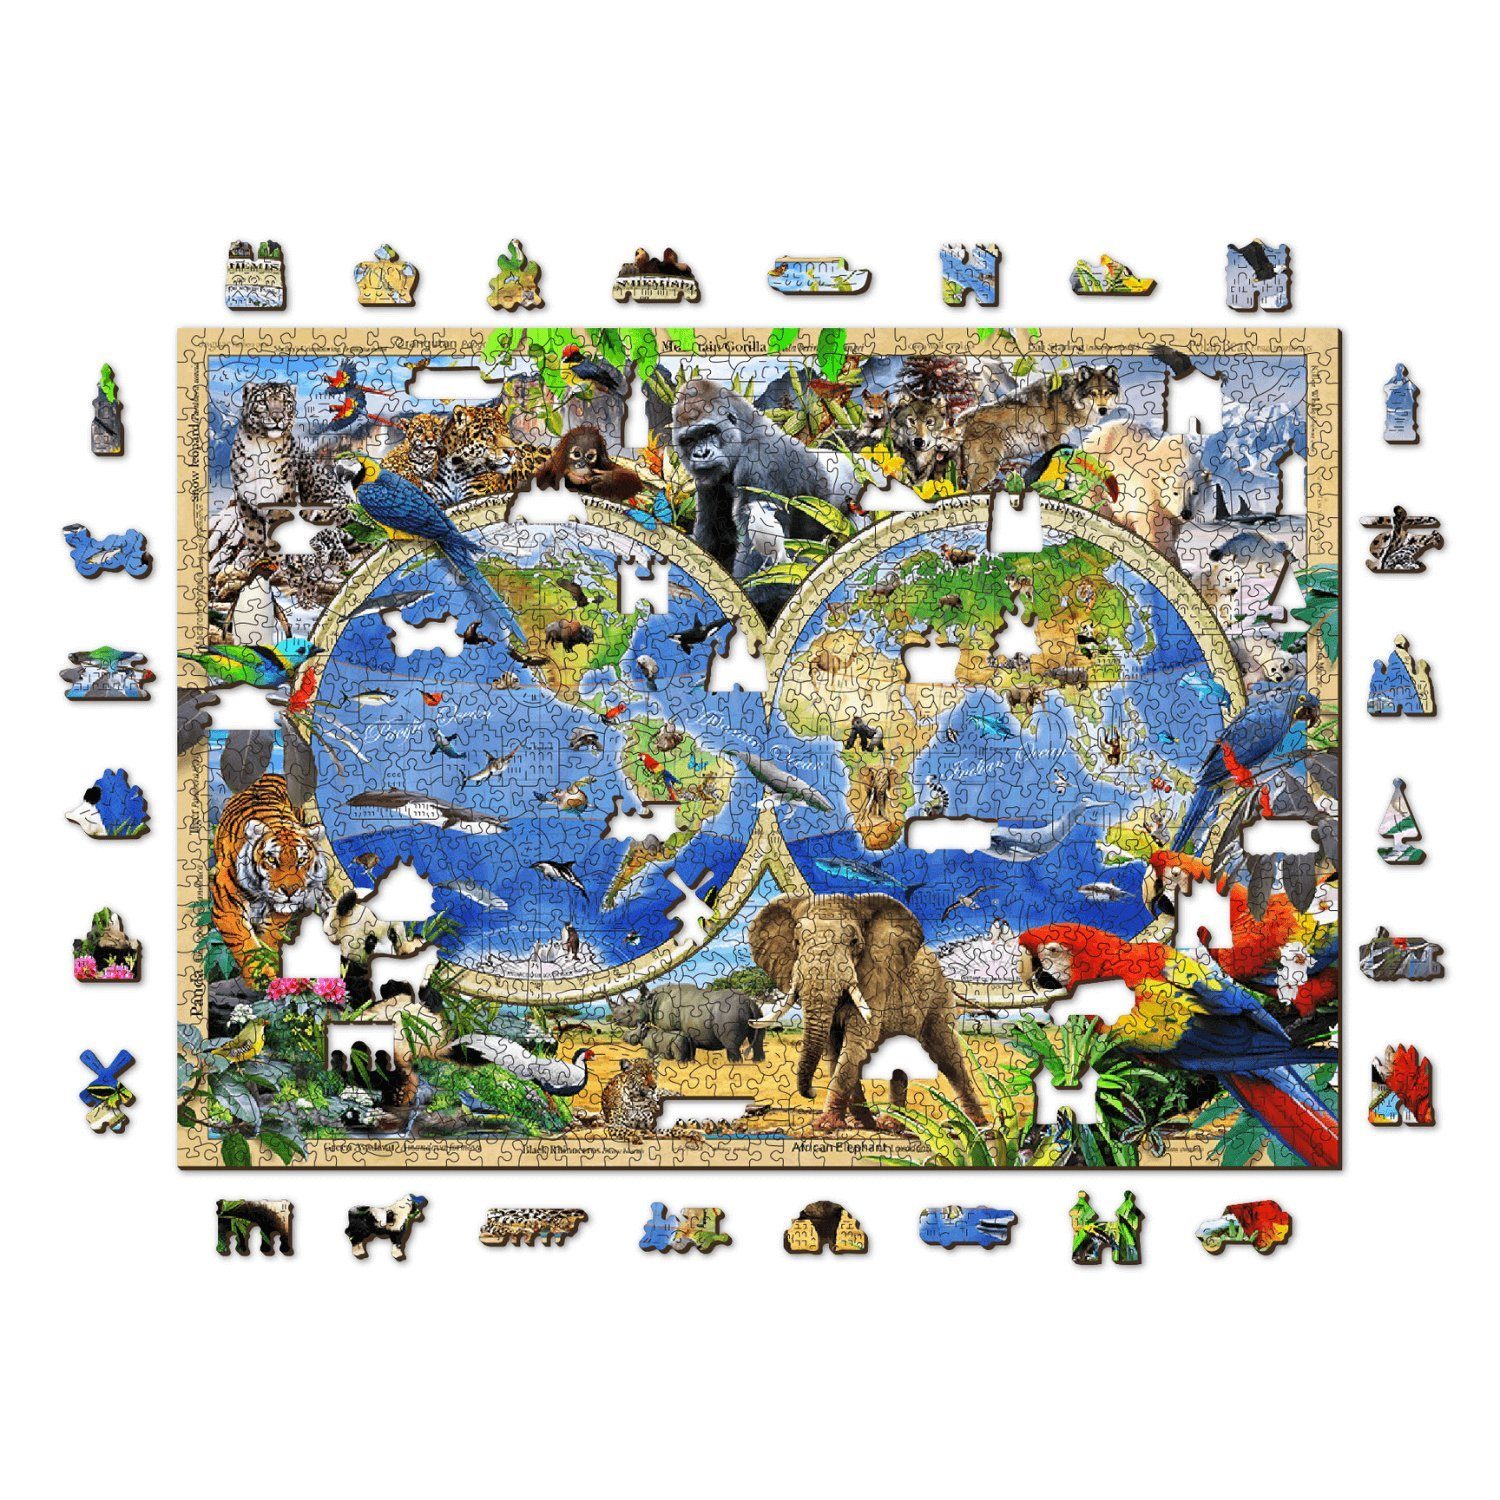 Puzzleteile der Puzzle Königreich Wooden WoodenCity Tiere 1010 City Holzpuzzle, 1010 Puzzle